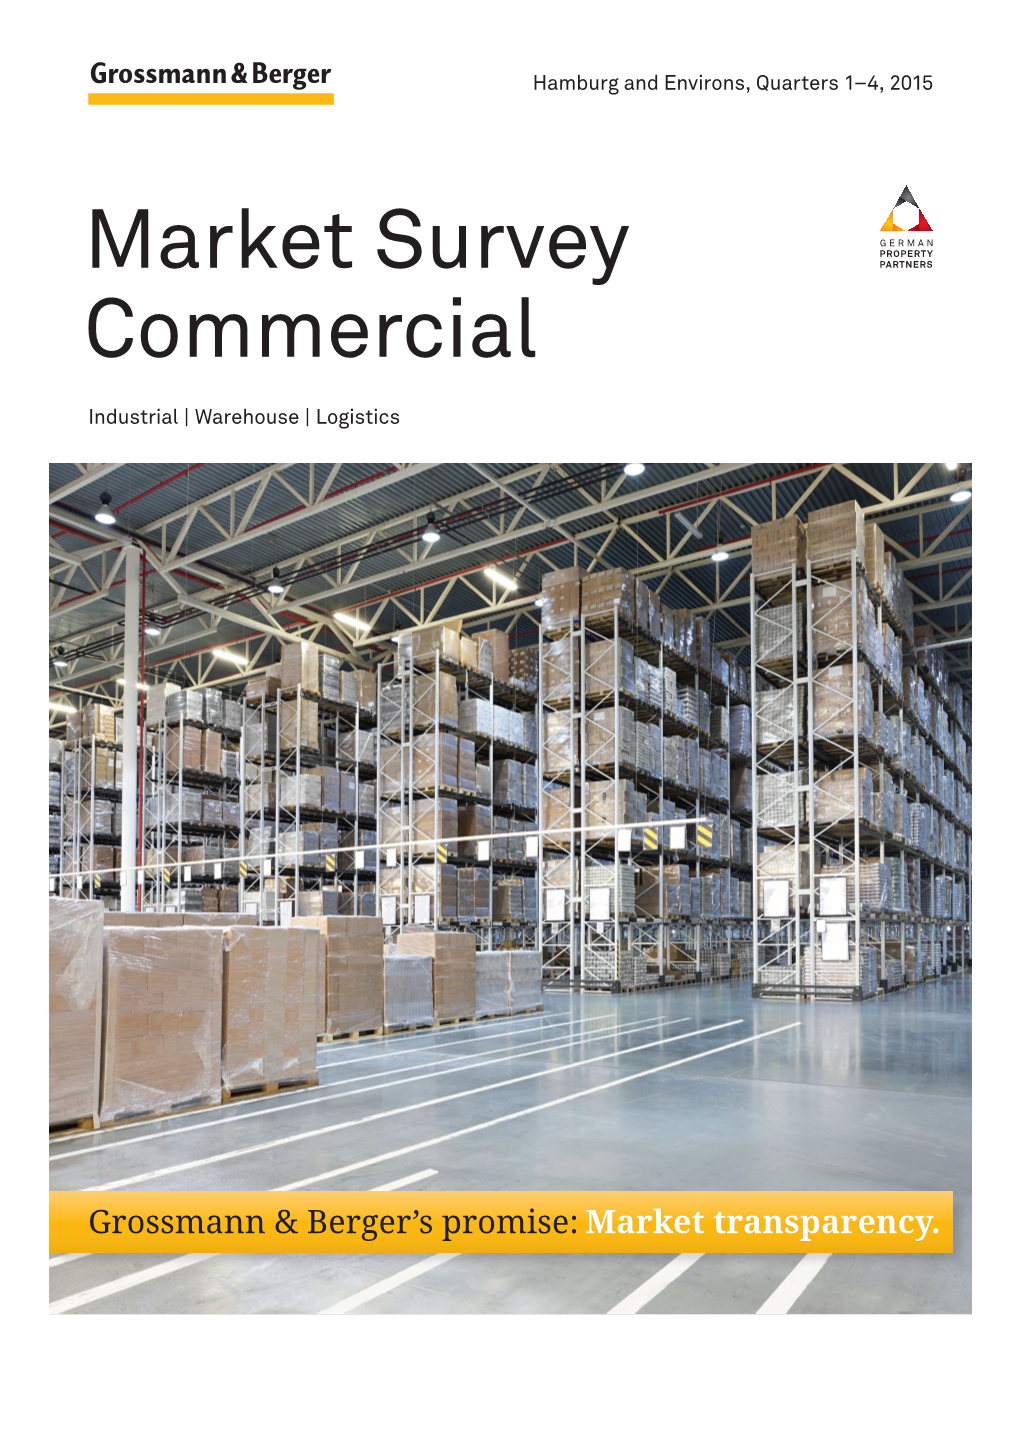 Market Survey Commercial